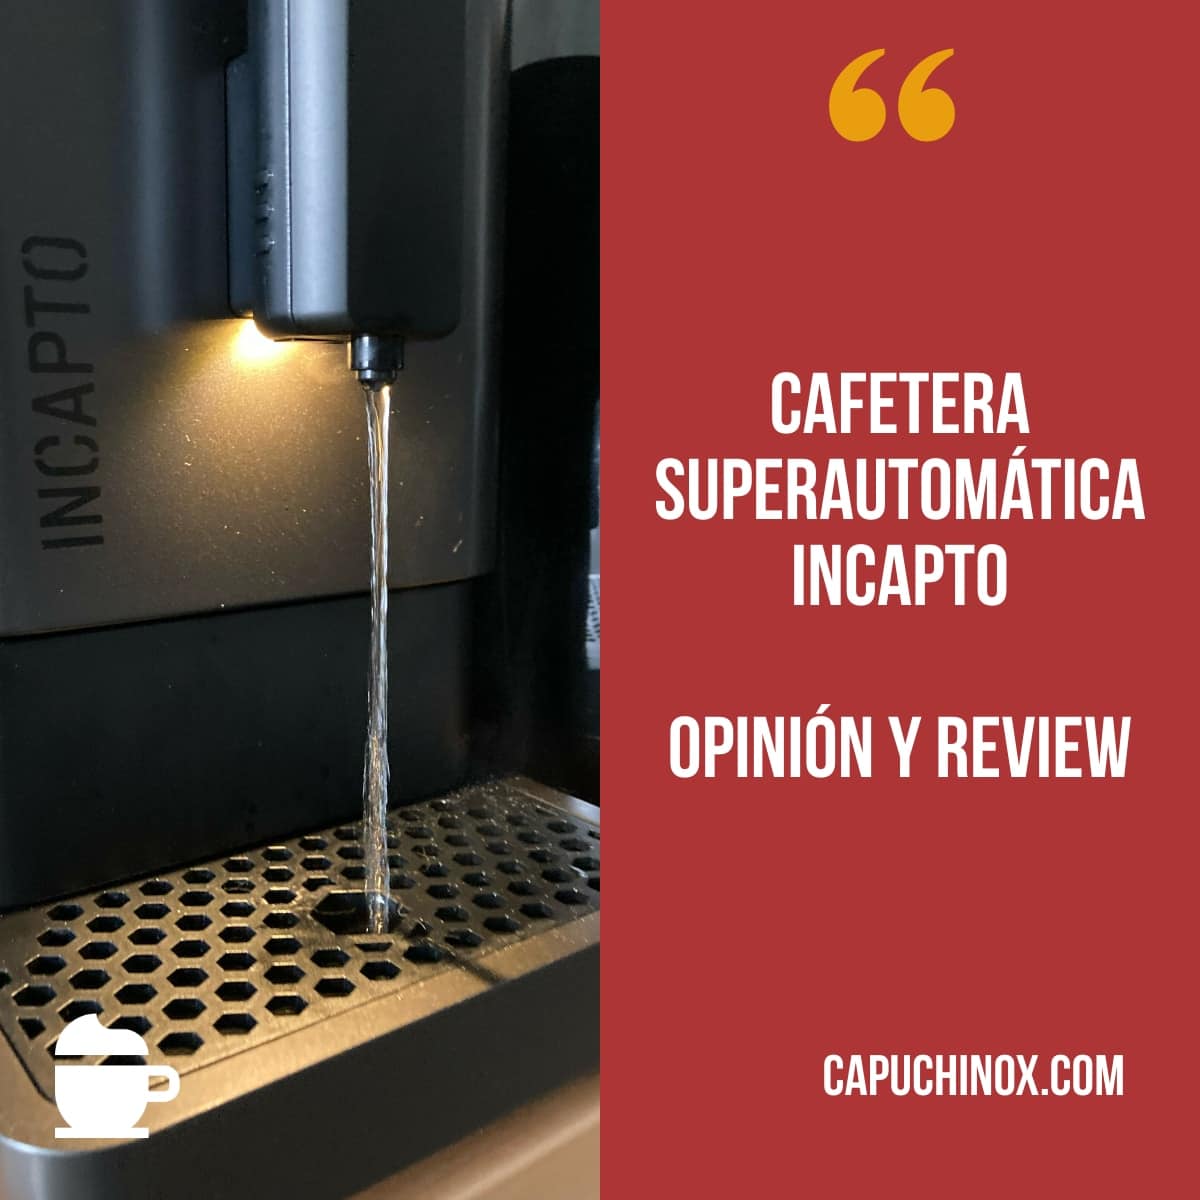 Cafetera superautomática Incapto - Opinión y review